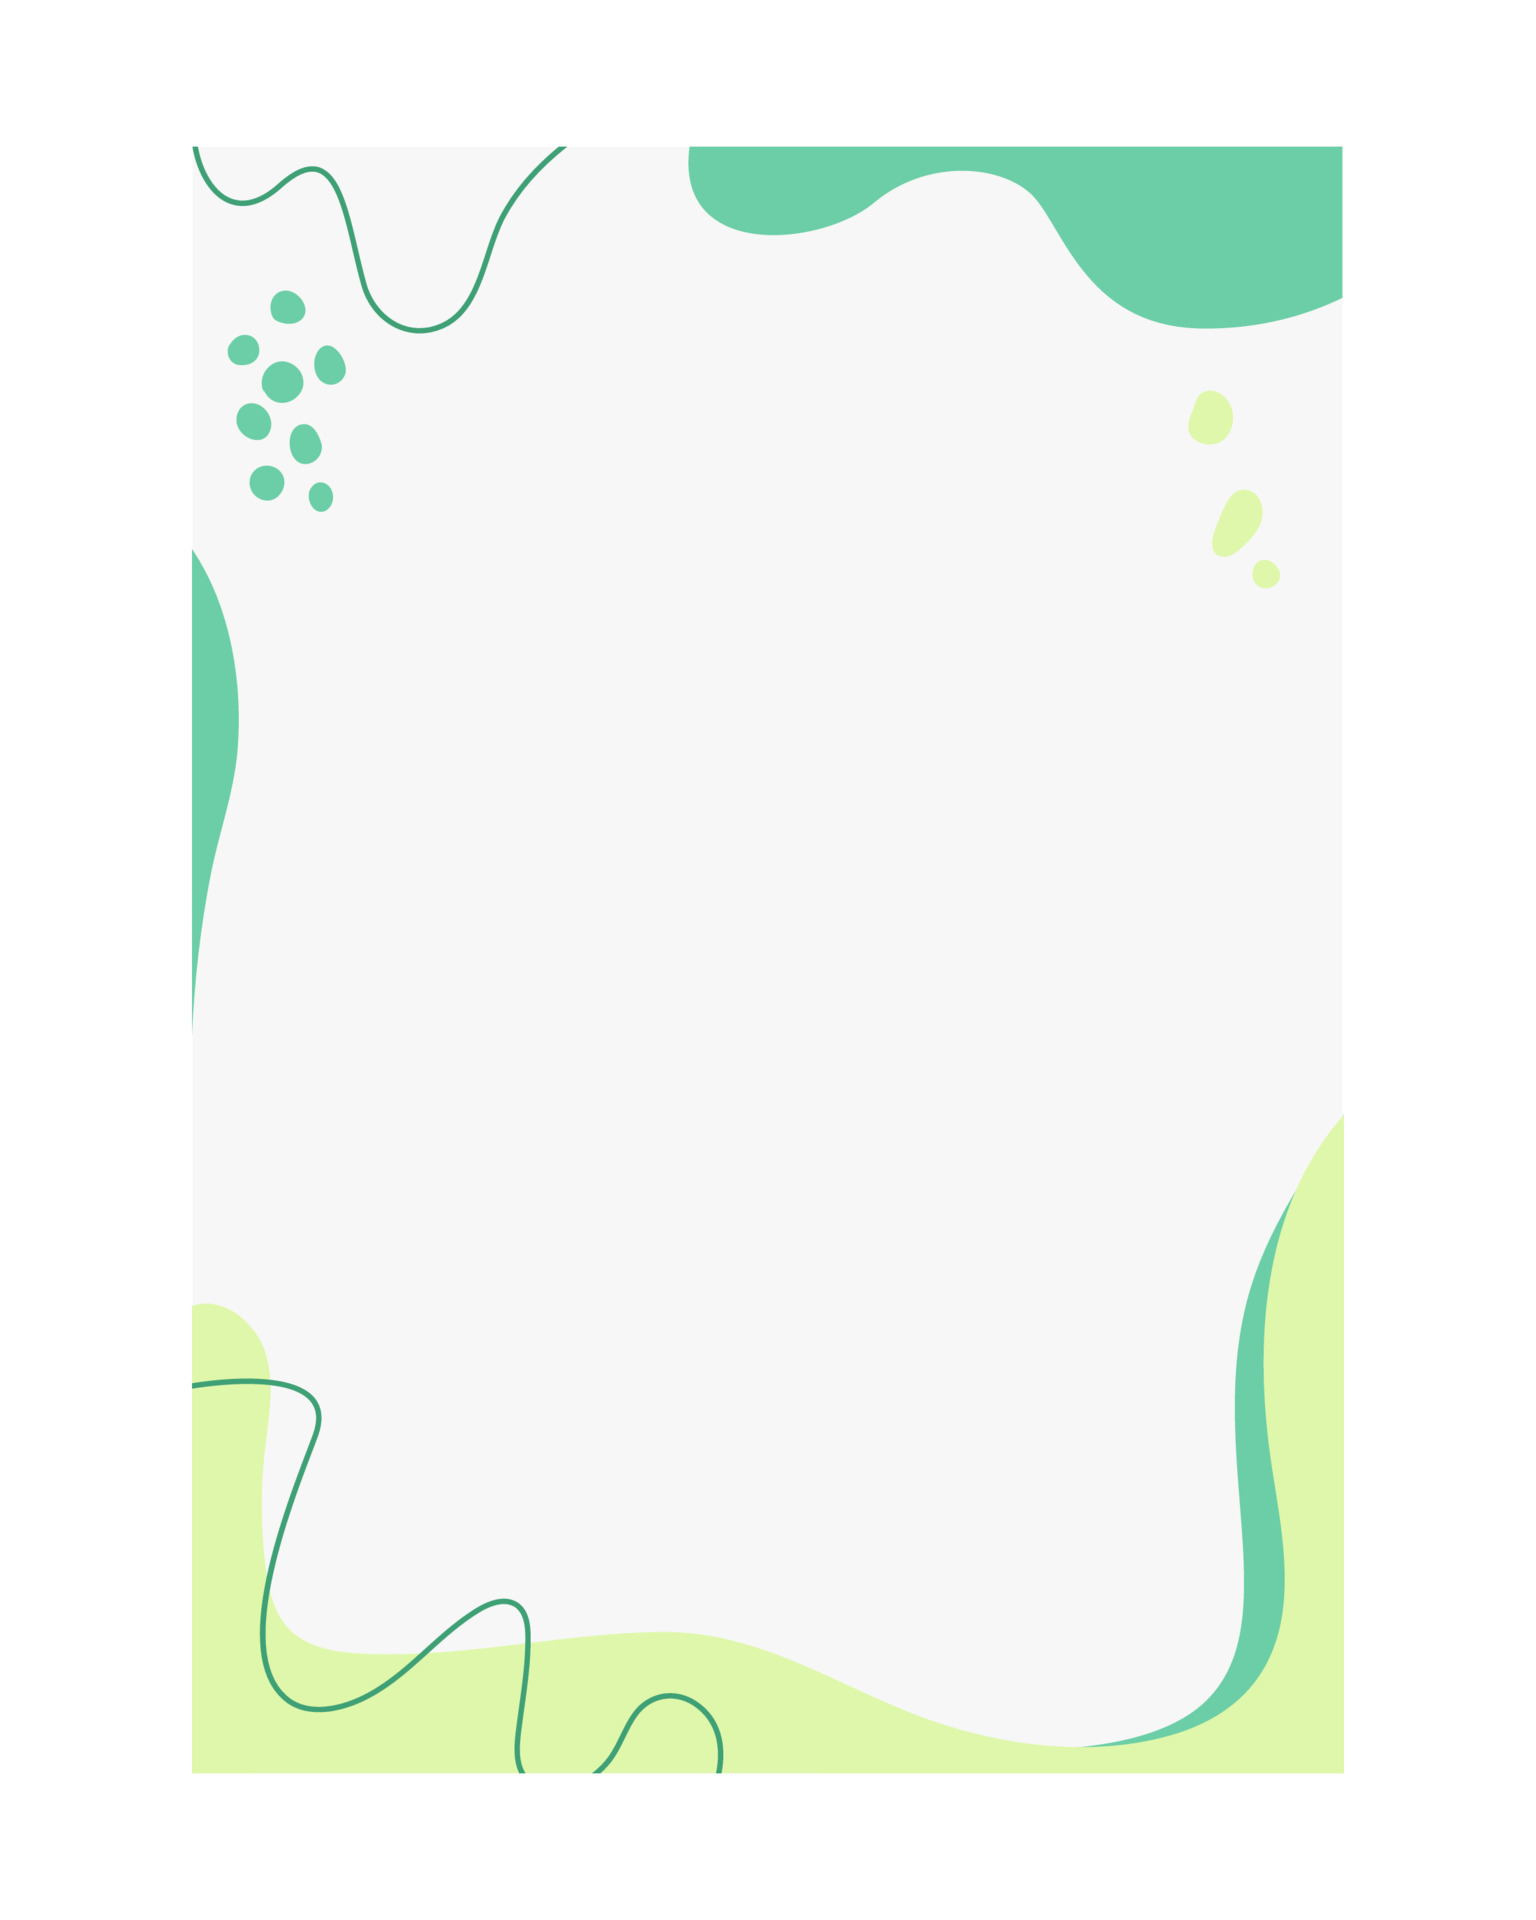 Green Worksheet Template: Màu xanh lá là màu của sự sinh sản và sự phát triển. Và mẫu màu xanh lá cây cho bảng tính của bạn sẽ tạo ra một bầu không khí mới, tươi mới và tăng năng lượng cho người sử dụng. Xem hình ảnh để tải xuống mẫu bảng tính màu xanh số 1 của chúng tôi.